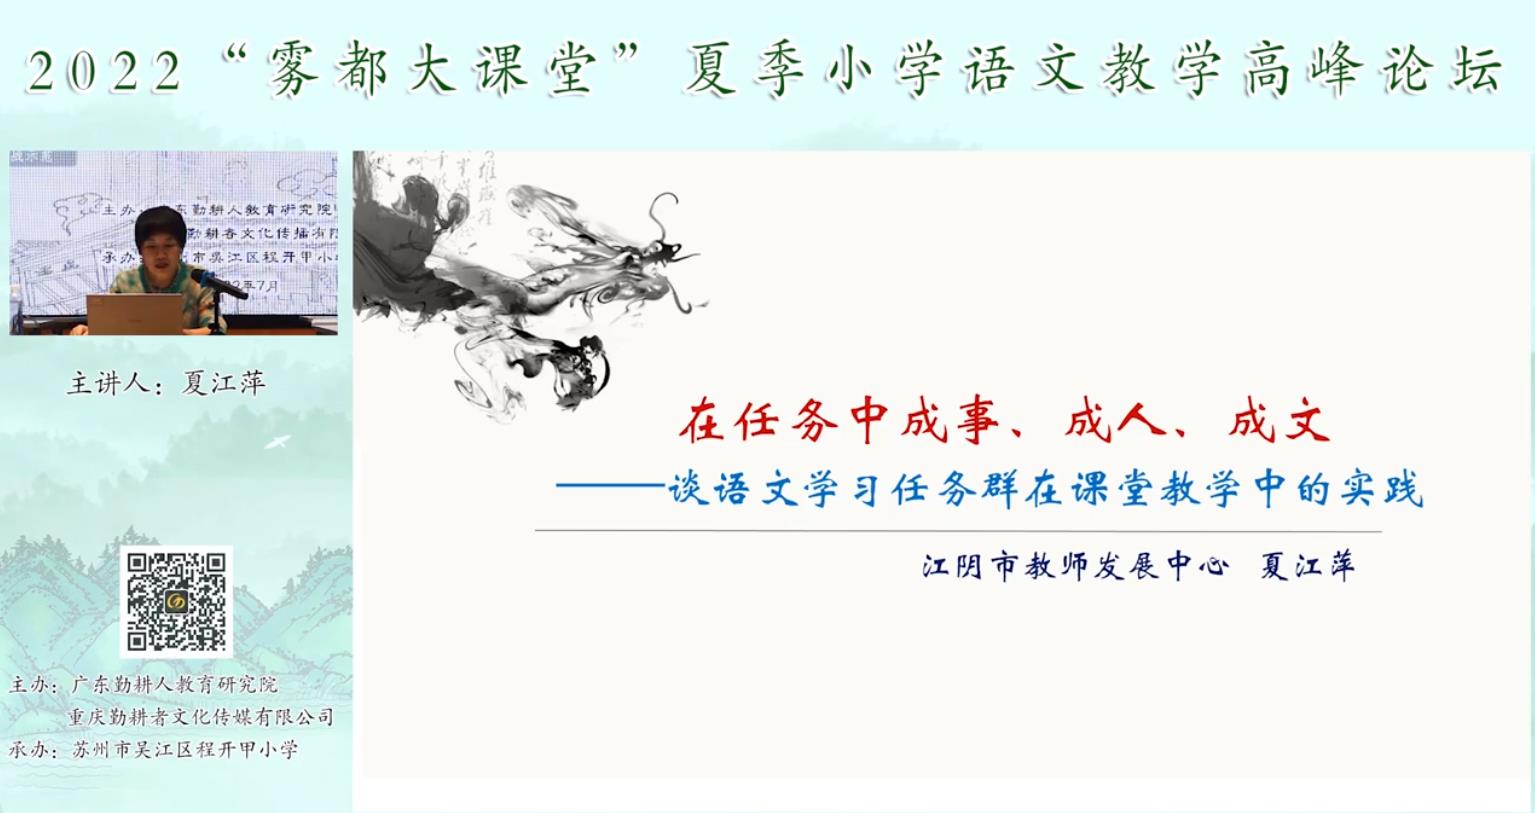 夏江萍， 主题报告《语文学习任务群的课堂教学实践》